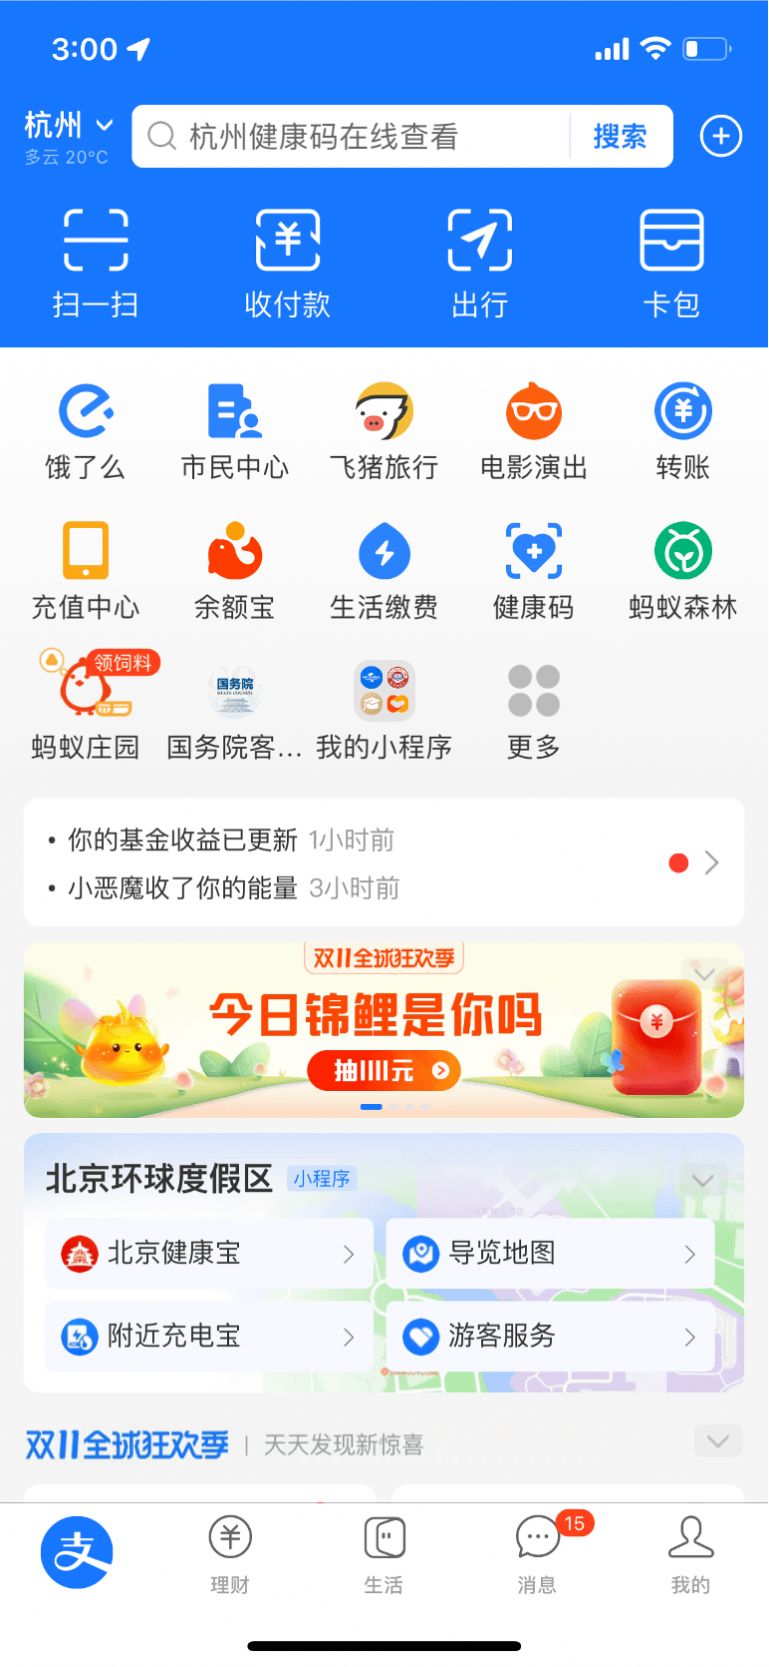 支付宝河南医保服务平台便民小程序app正式版截图3: